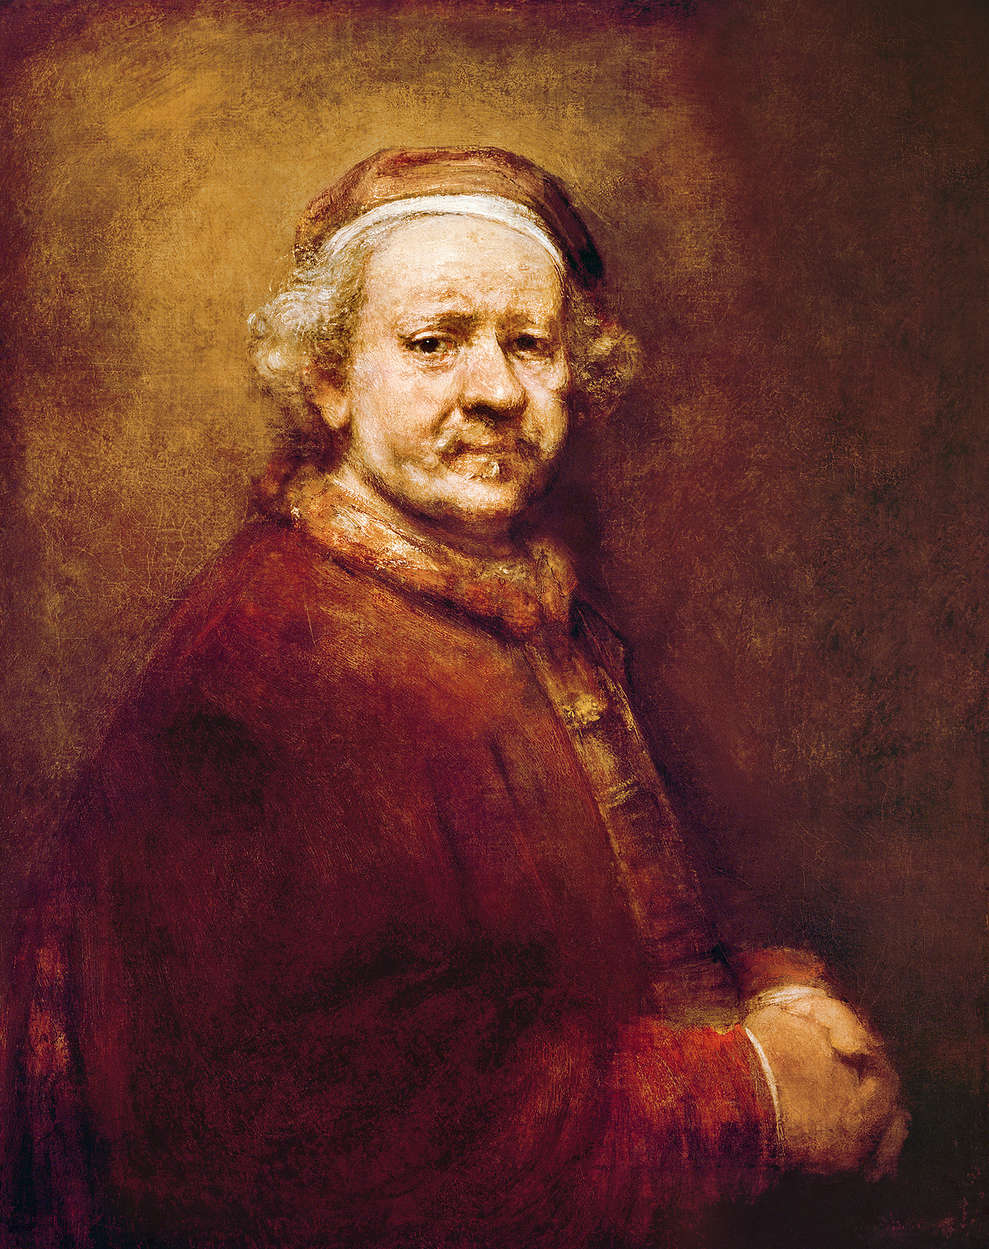             Papier peint panoramique "Autoportrait" de Rembrandt van Rijn
        